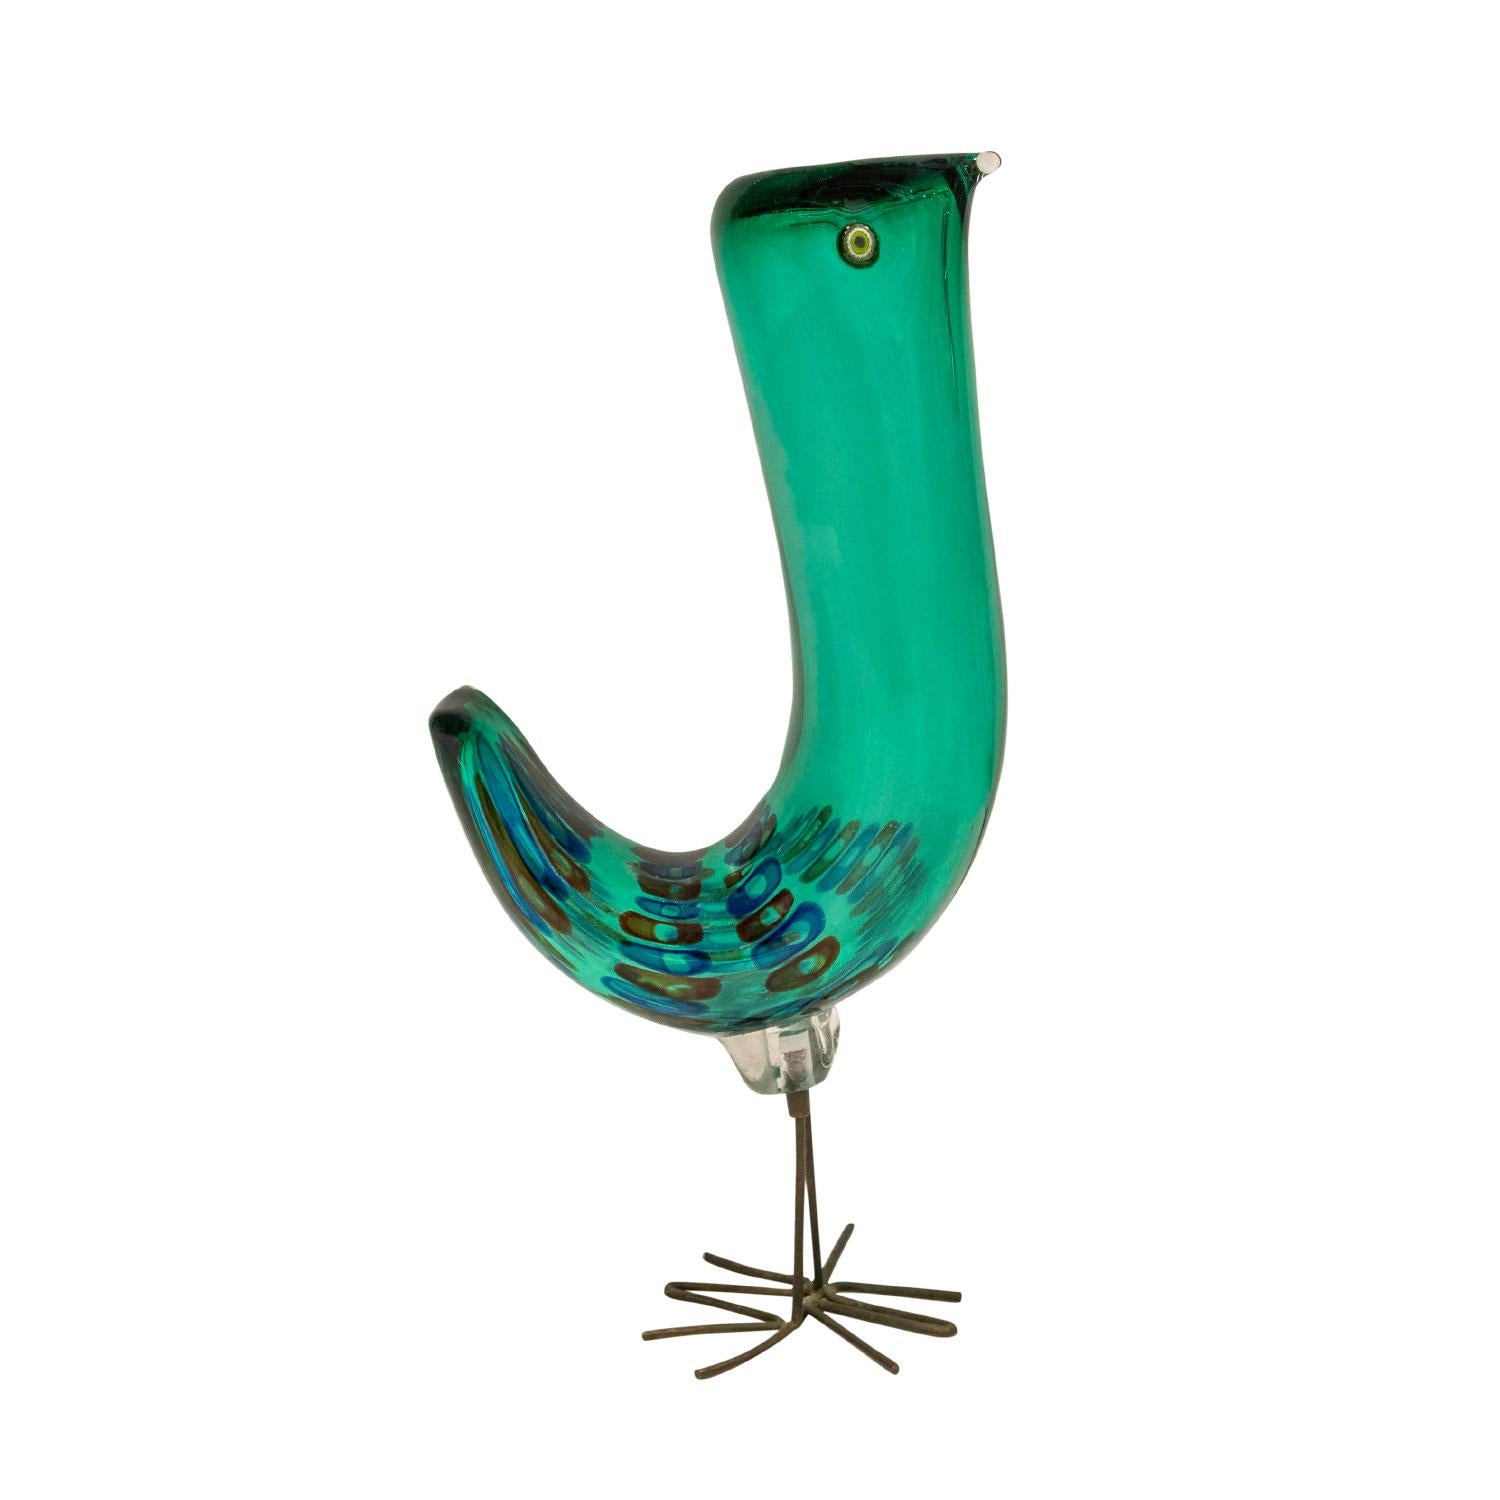 Seltener mundgeblasener Glasvogel, Serie Pulcini, grün mit roten und blauen Murrhinen mit Kupferfüßen von Alessandro Pianon für Vistosi, Murano Italien, ca. 1963.  Pulcini bedeutet auf Italienisch Küken (Babyhühner).  Diese Vögel sind sowohl